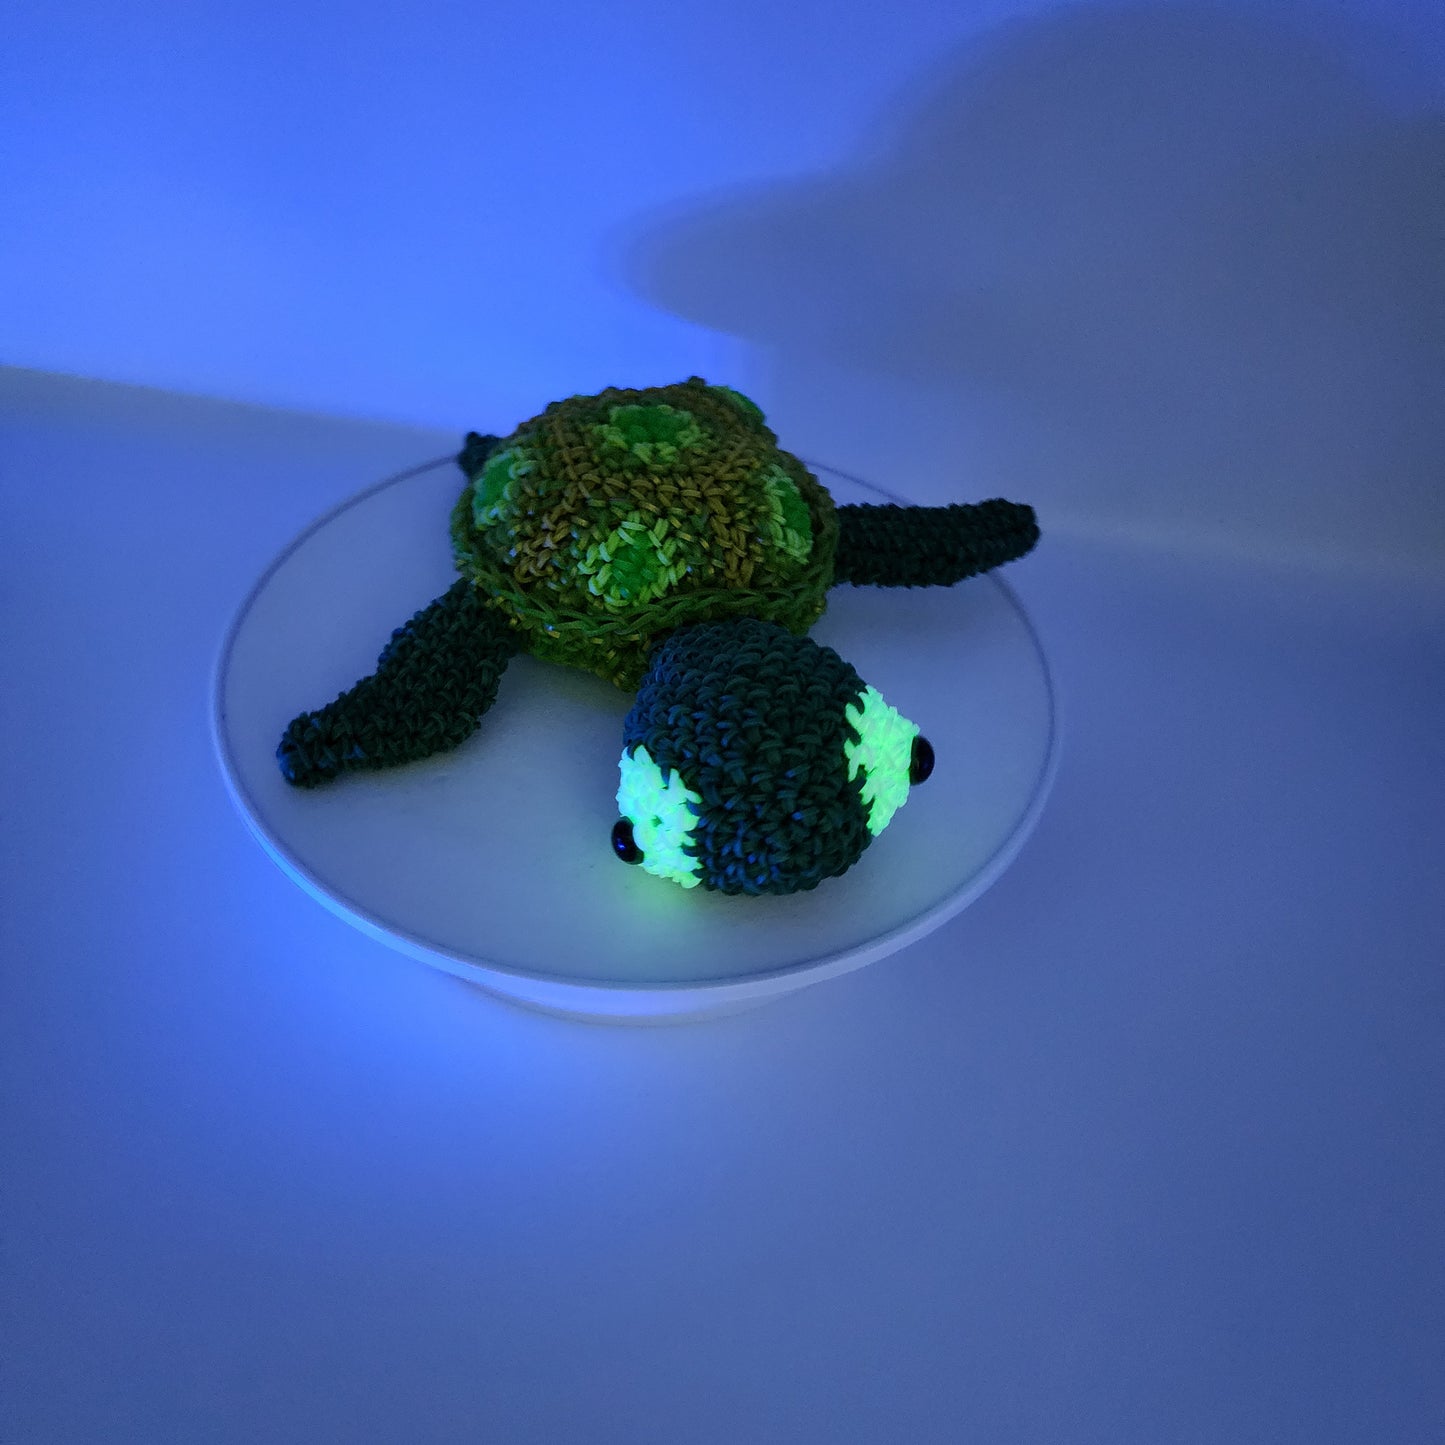 Loomigurumi Sea Turtles with Glow in the Dark Eyes